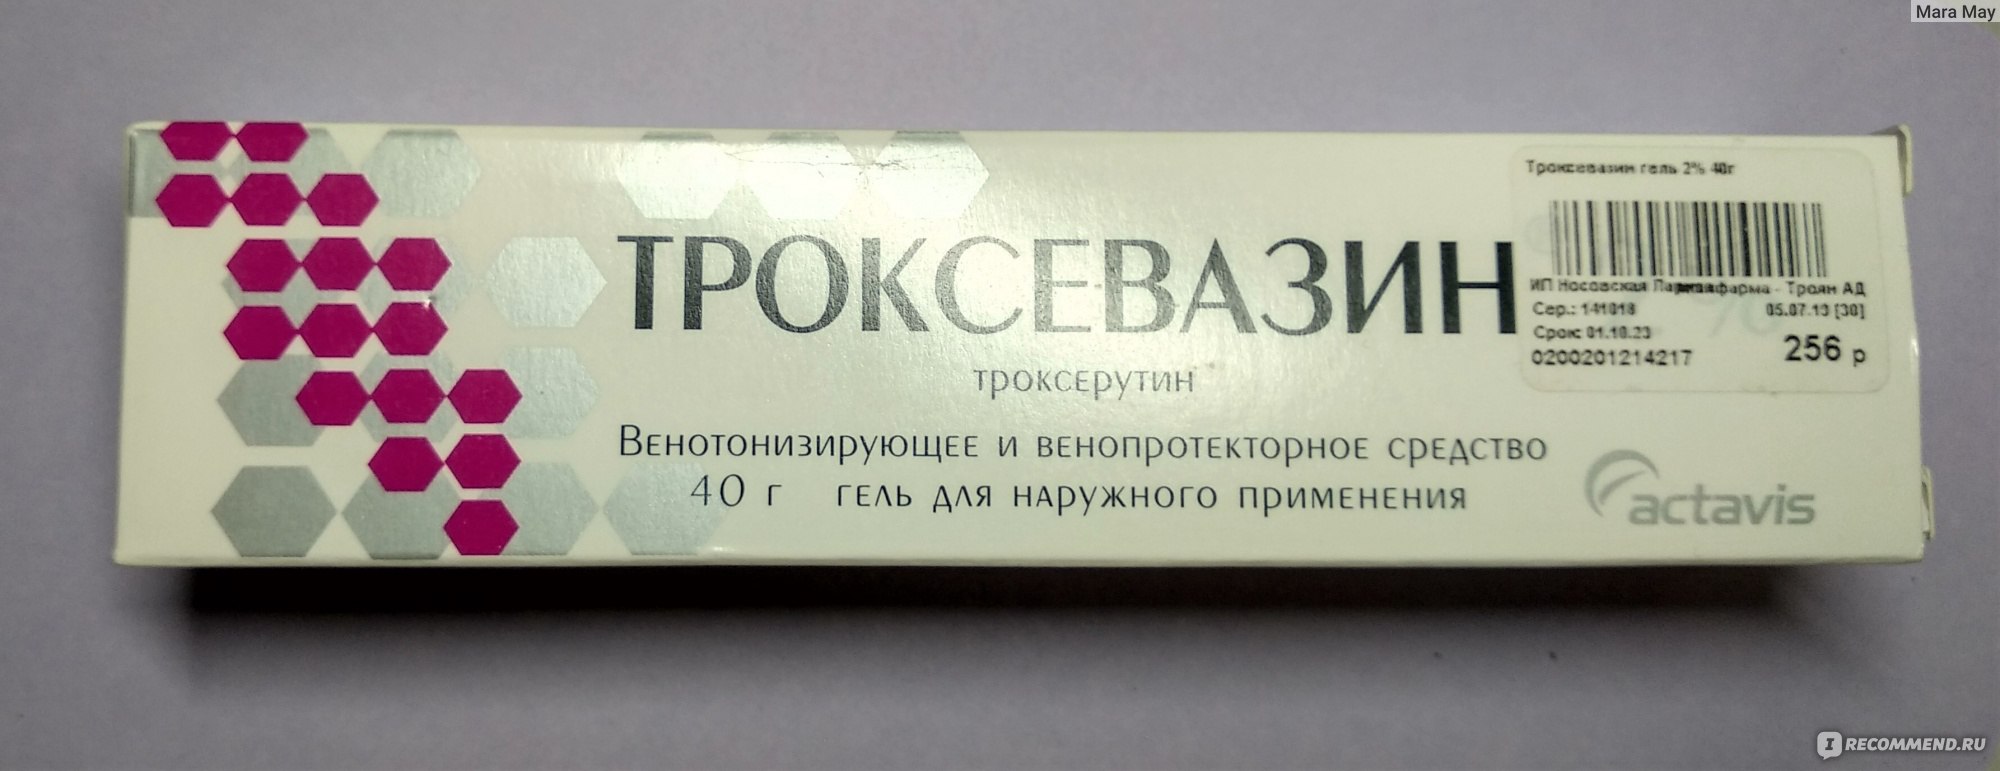 Троксевазин Купить В Новосибирске